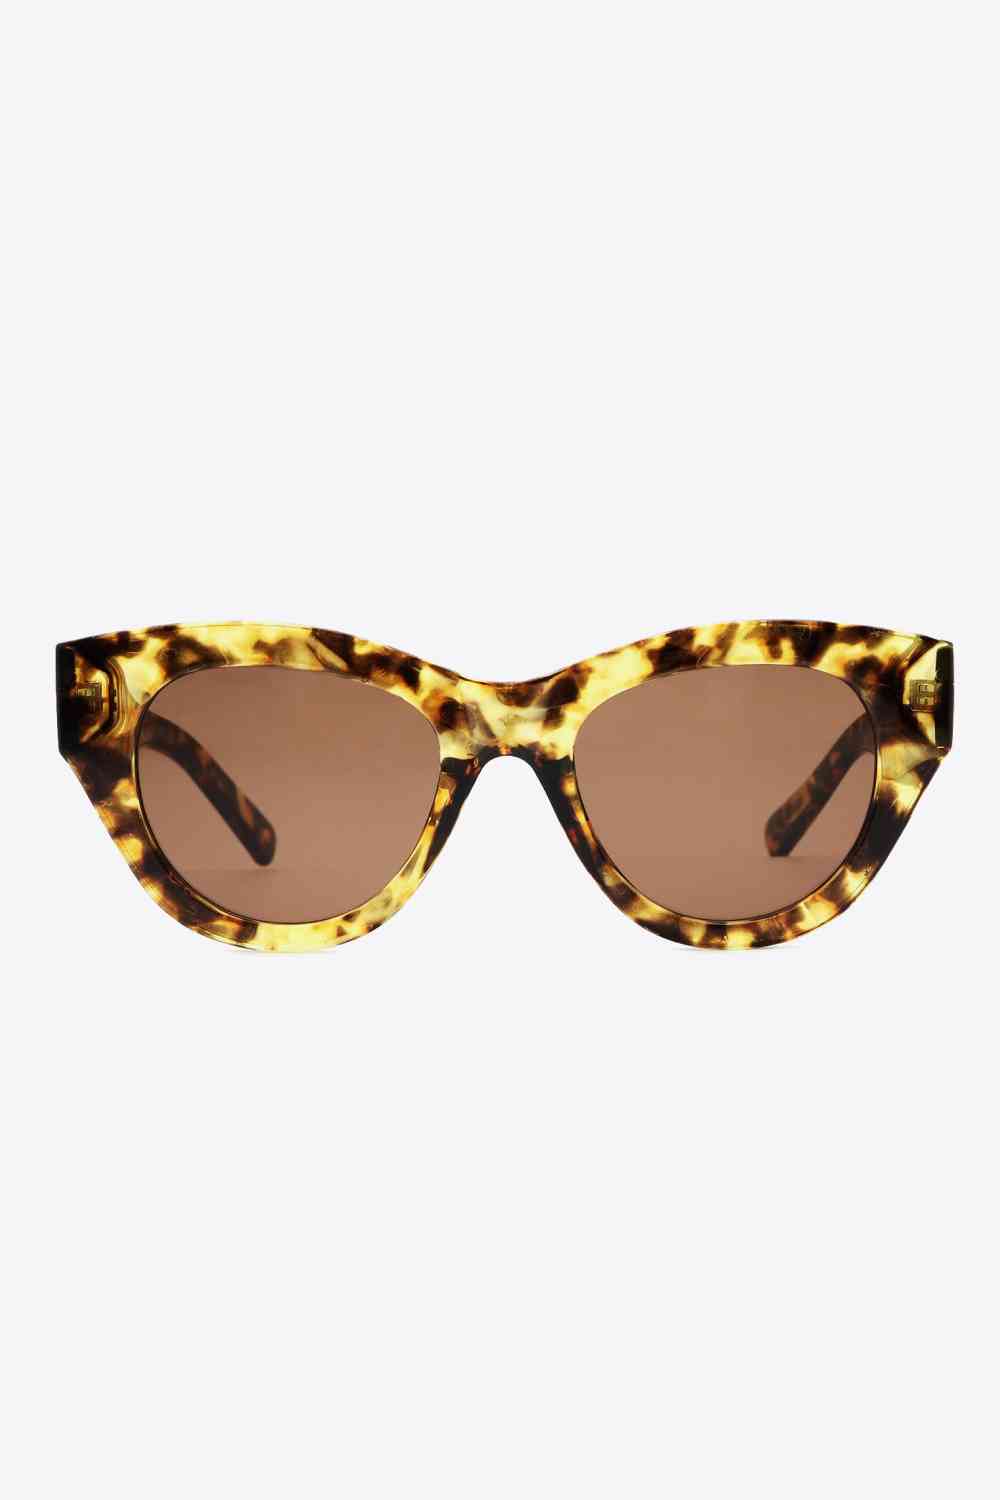 TEEK - Multicolor Tortoiseshell Sunglasses EYEGLASSES TEEK Trend   